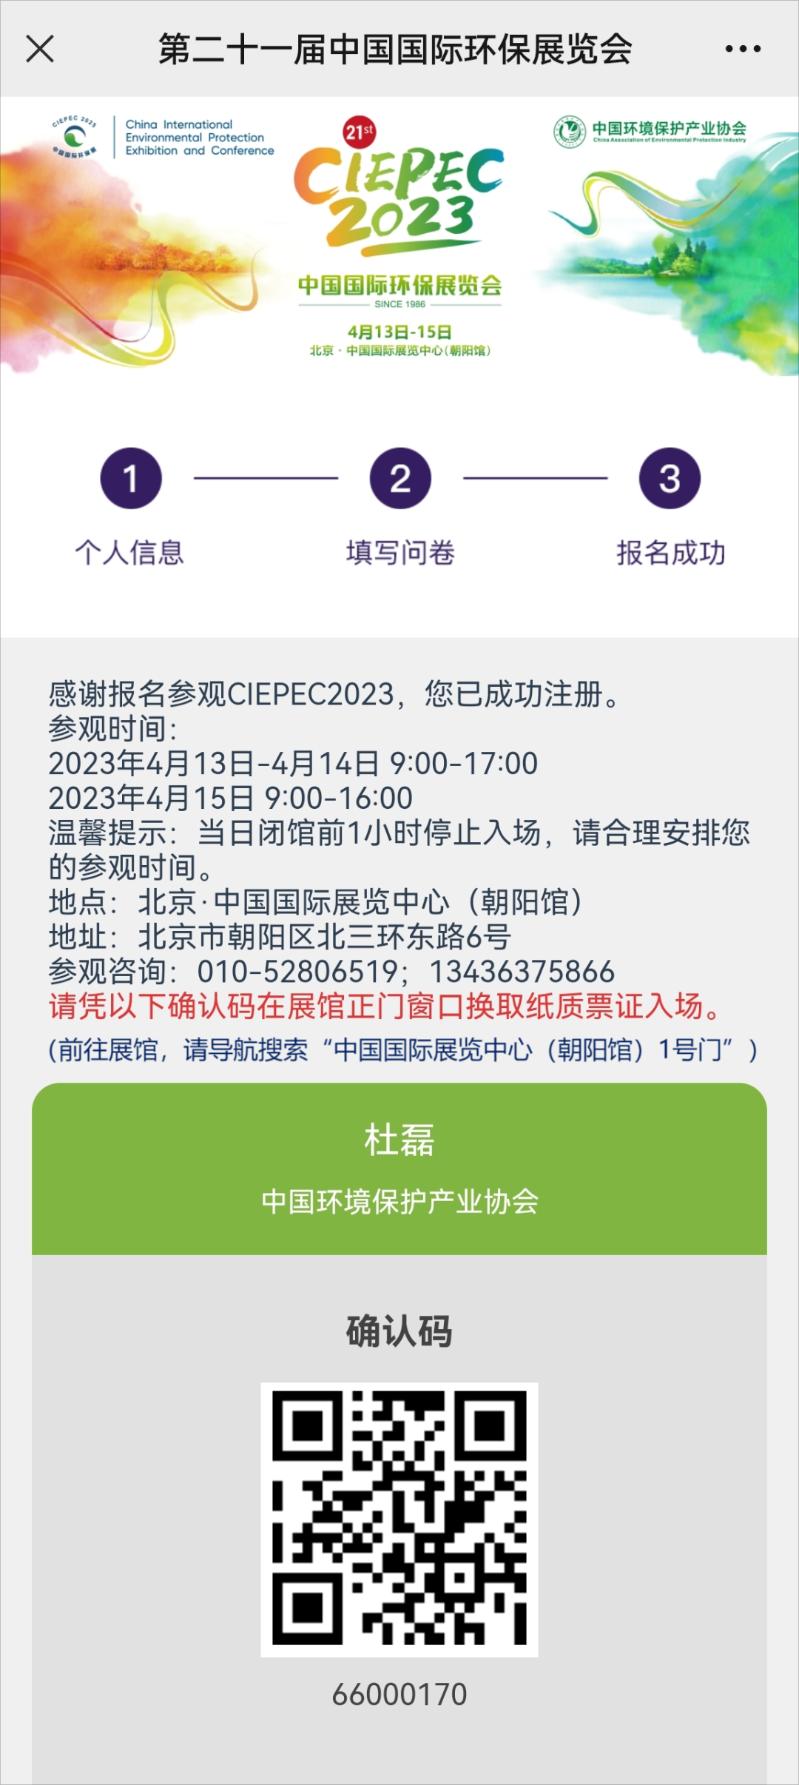 春风拂面，相约北京，马上登记参观CIEPEC2023啦！,中环网